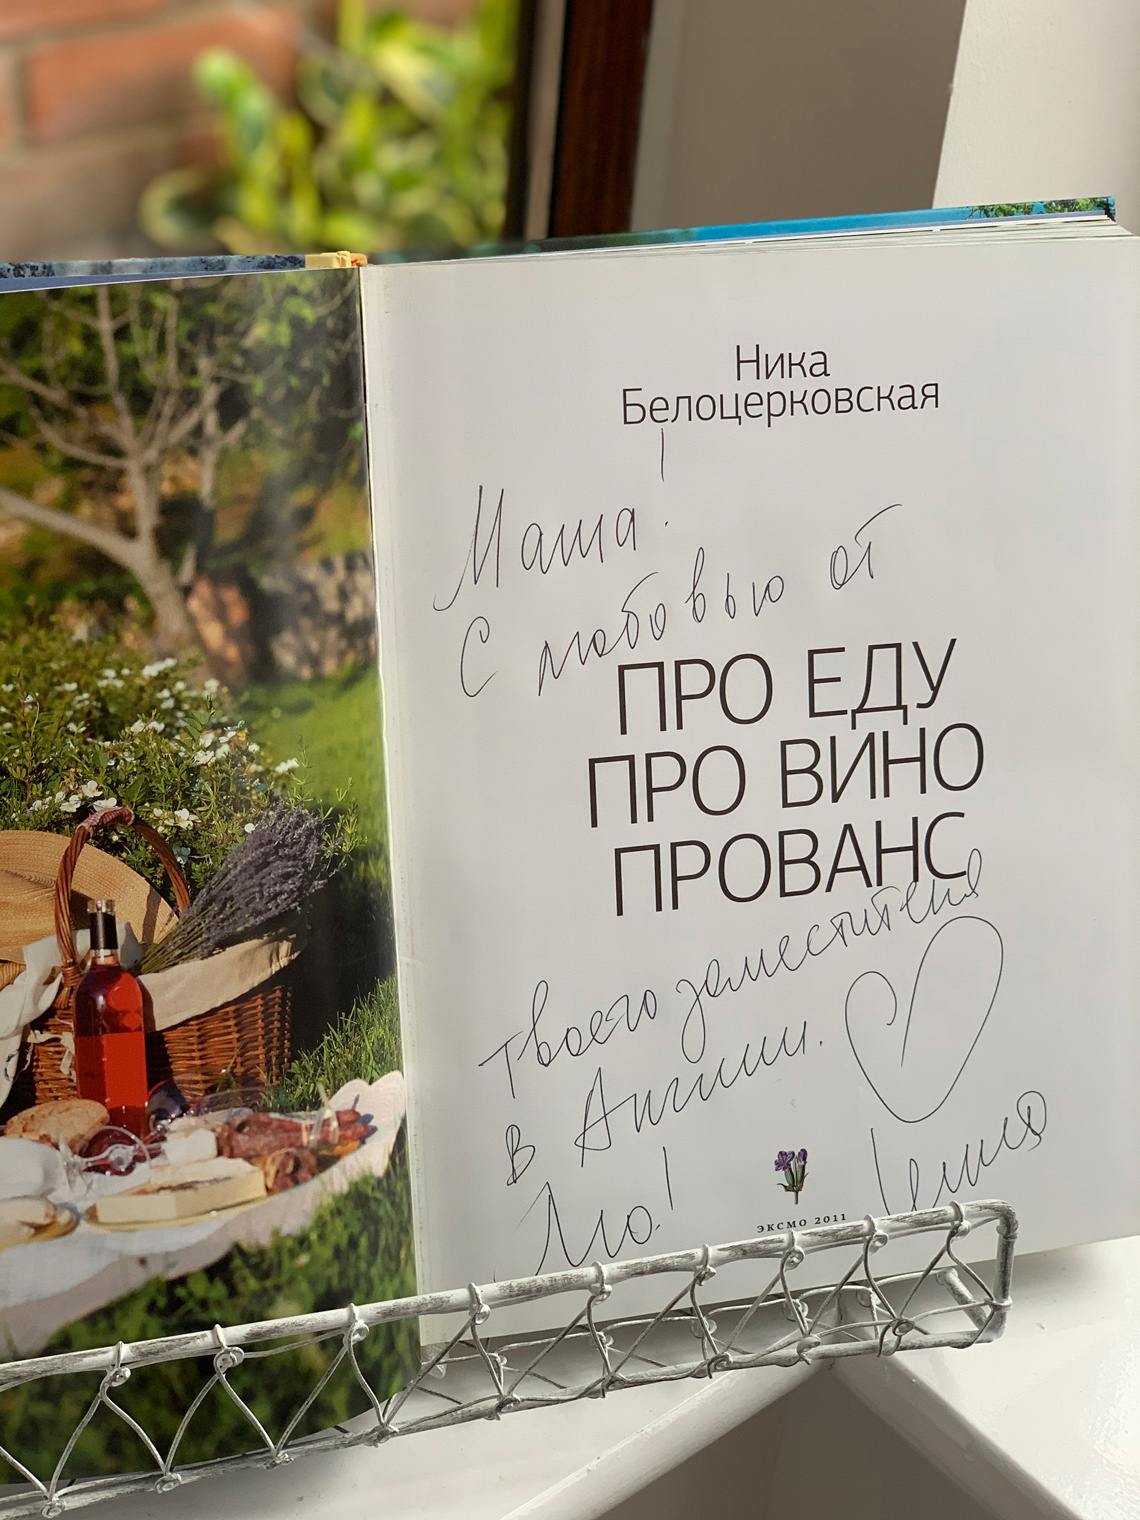 Книга Ники Белоцерковской "Про еду, про вино, про прованс" с автографом автора